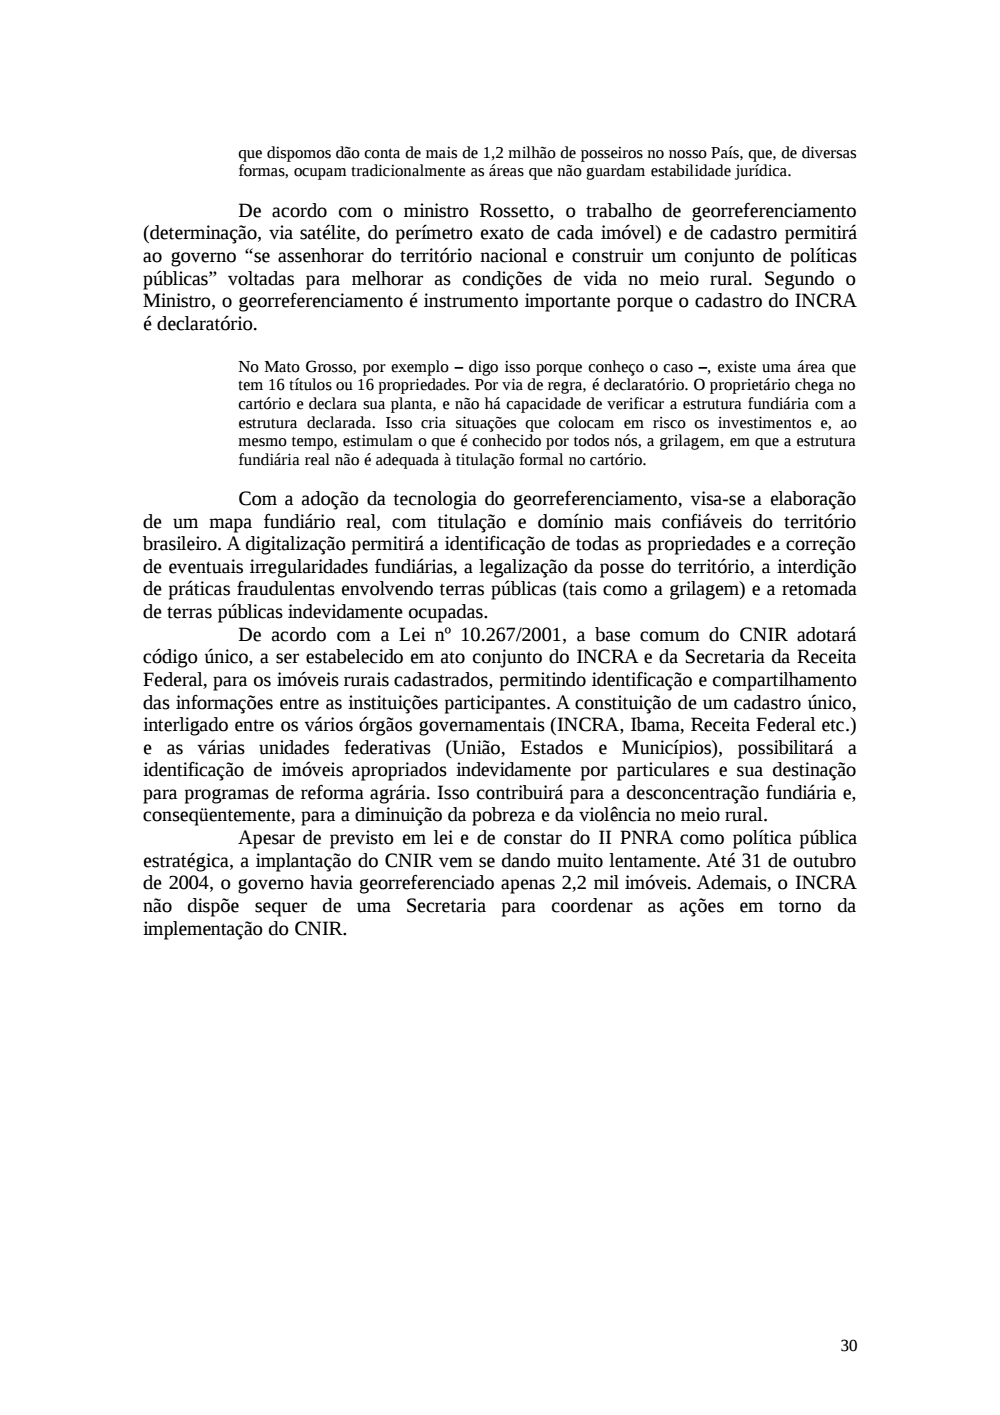 Page 30 from Relatório final da comissão